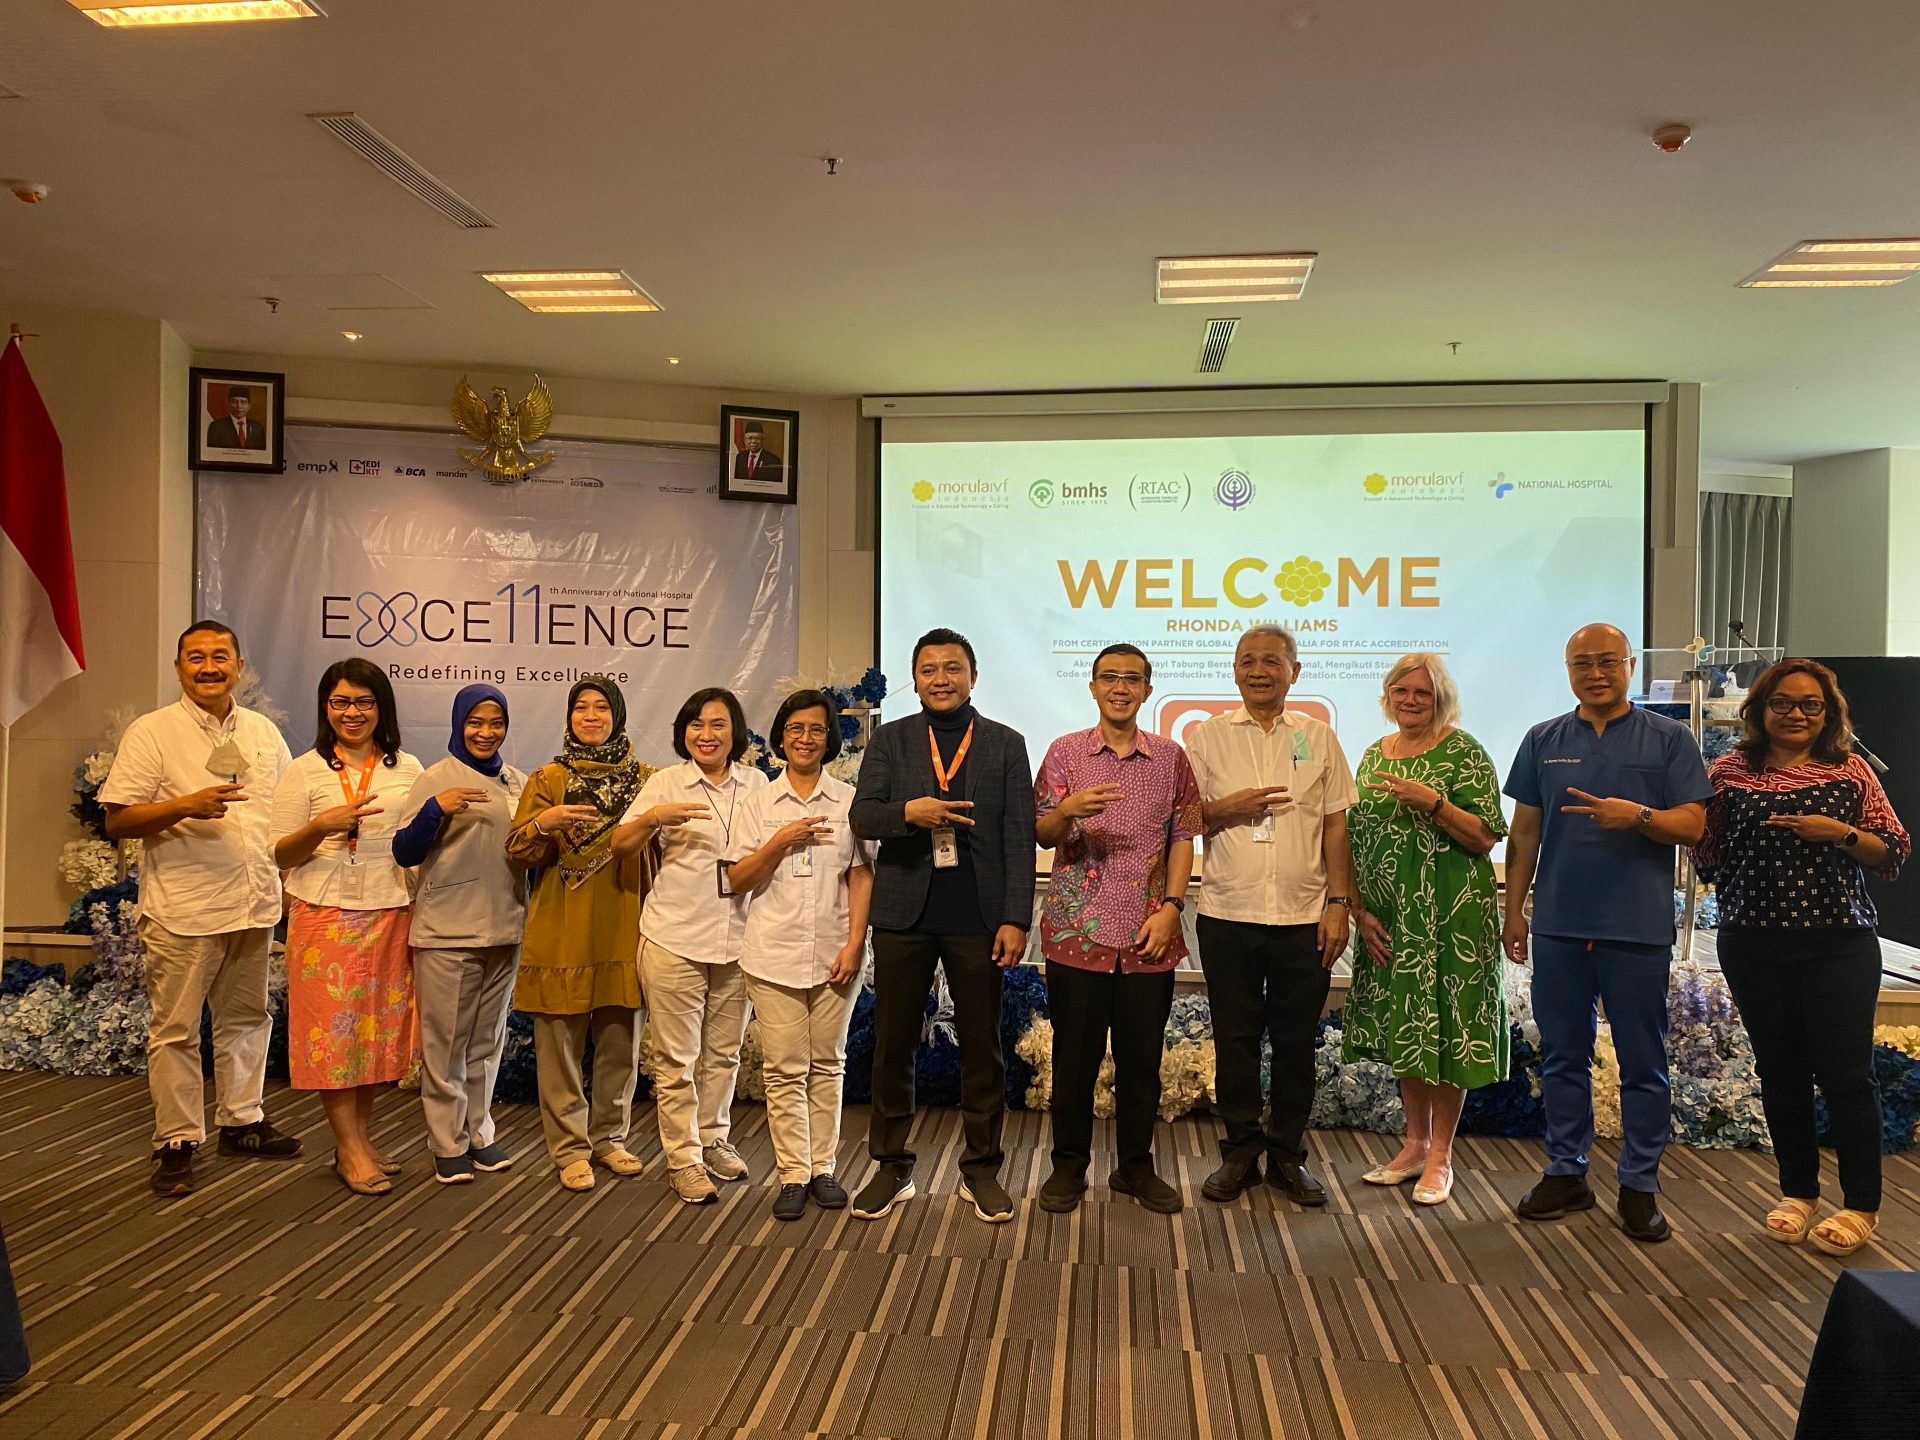 Morula IVF Surabaya Menjadi Klinik Fertilitas Pertama di Indonesia Bagian Timur yang Berhasil Menorehkan Akreditasi Internasional (RTAC)